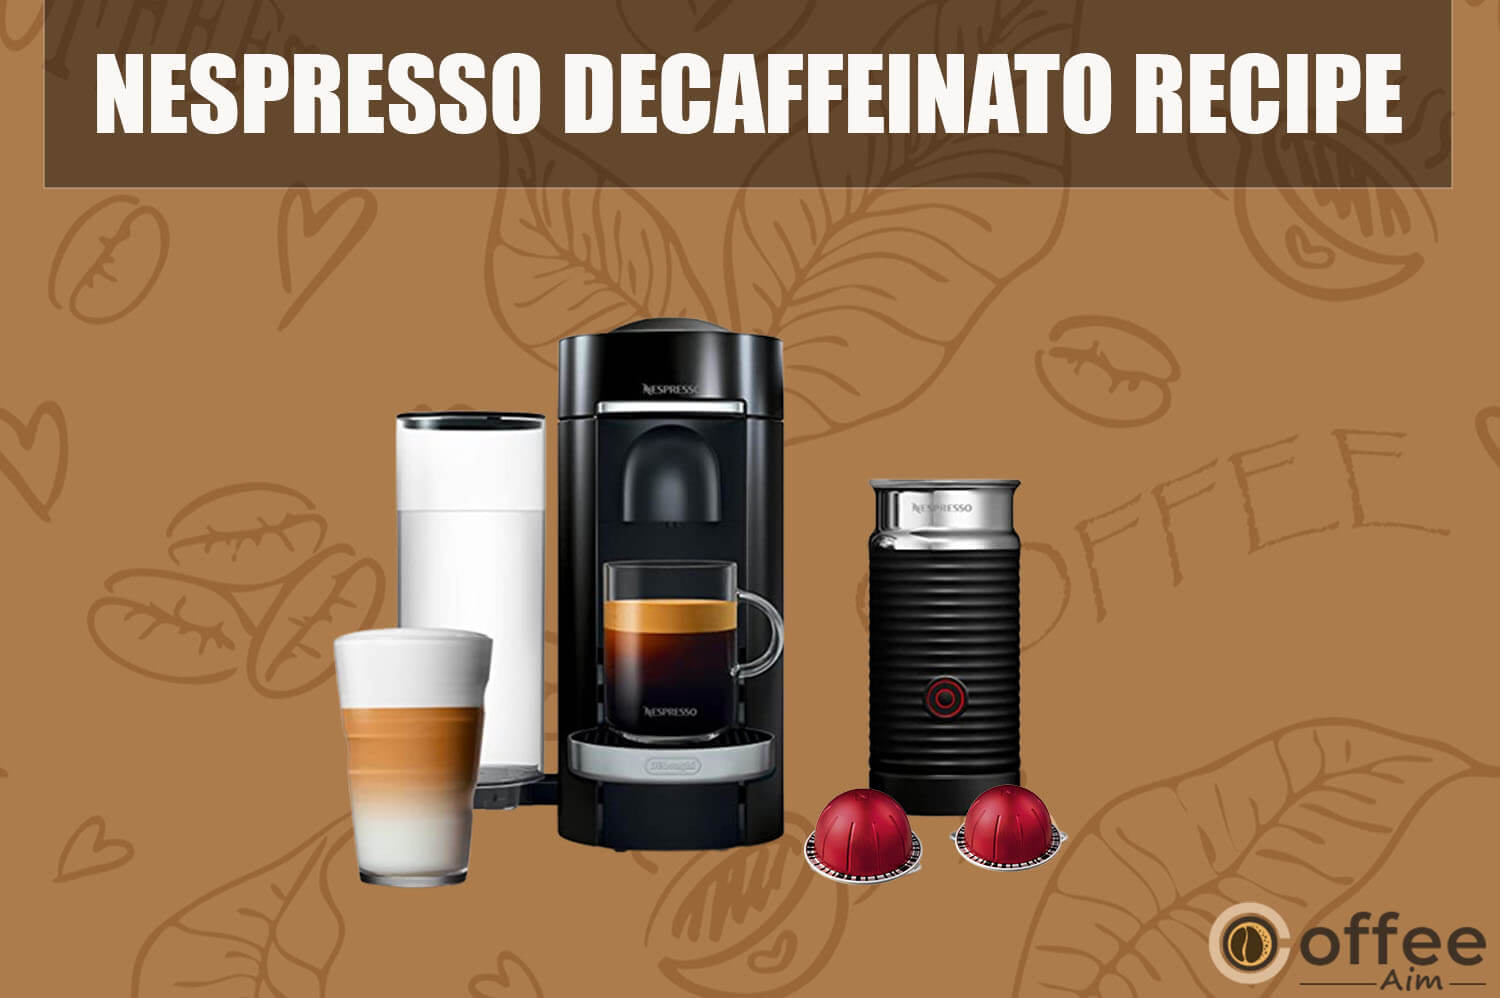 Featured image for the article "Nespresso Decaffeinato Recipe"